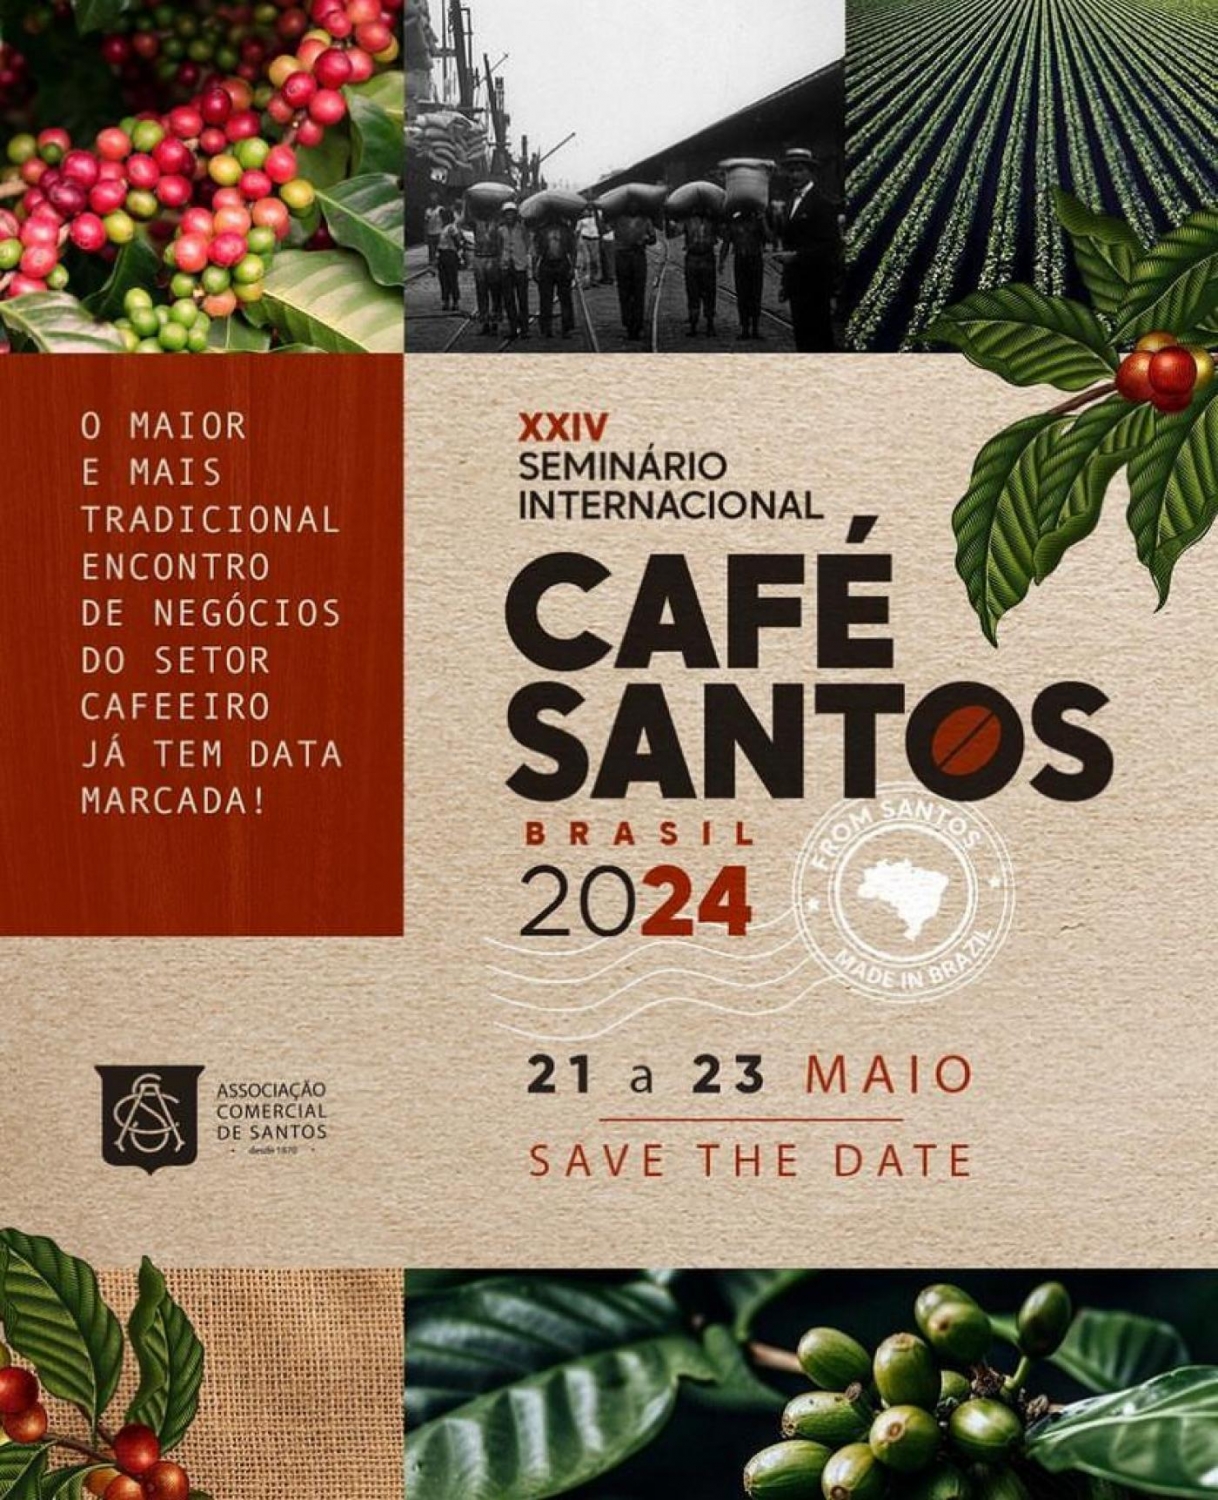 XXIV SEMINÁRIO INTERNCIONAL CAFÉ SANTOS